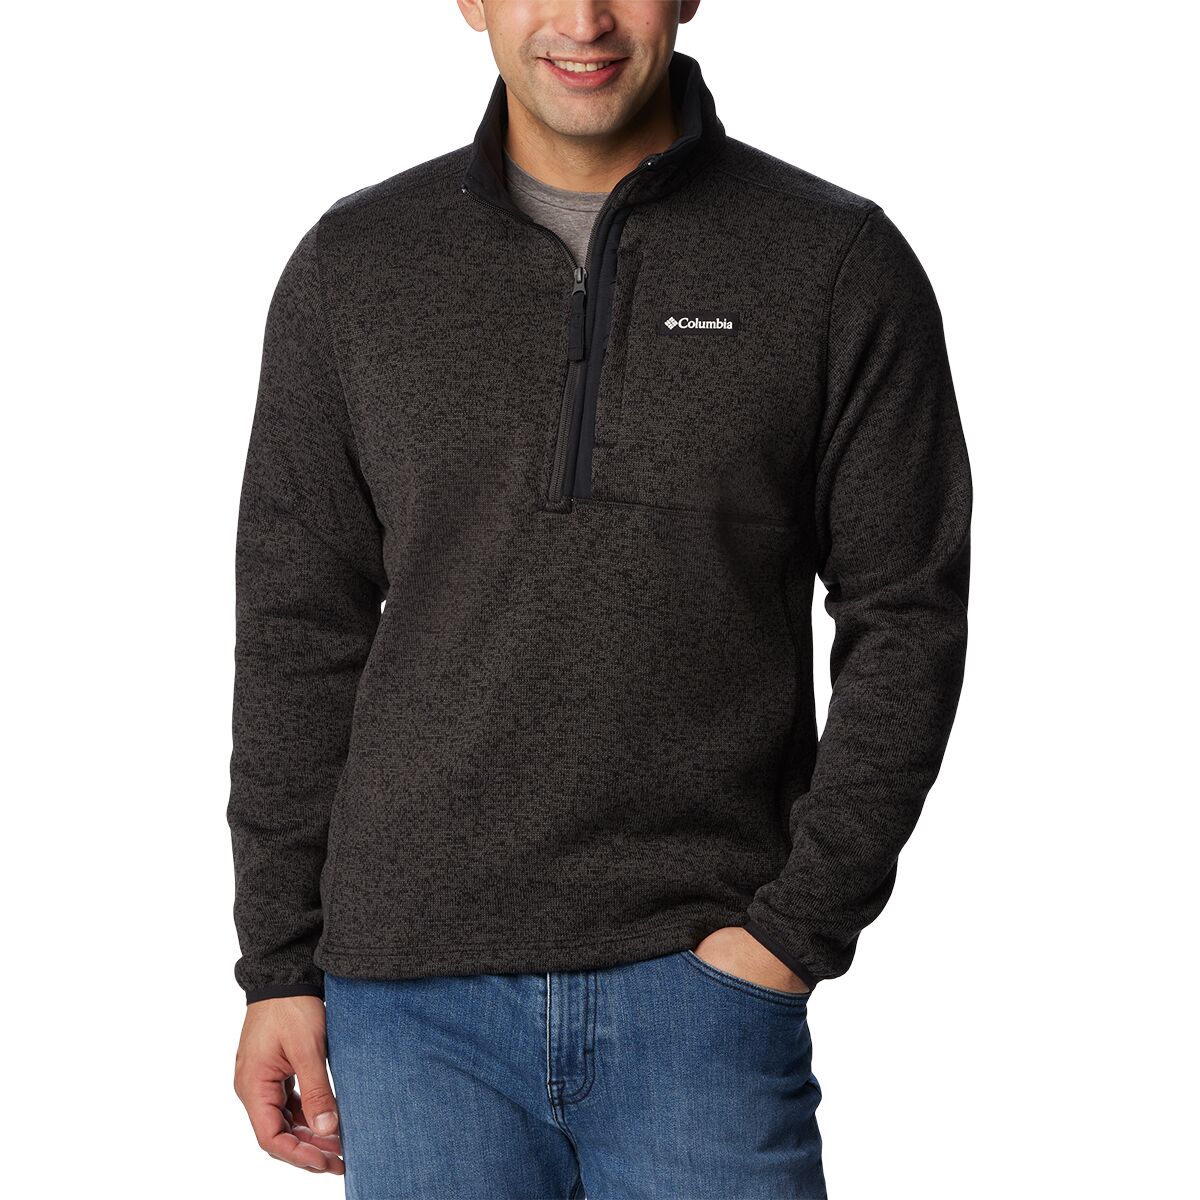 Sweater Weather 1/2-Zip Jacket - Men